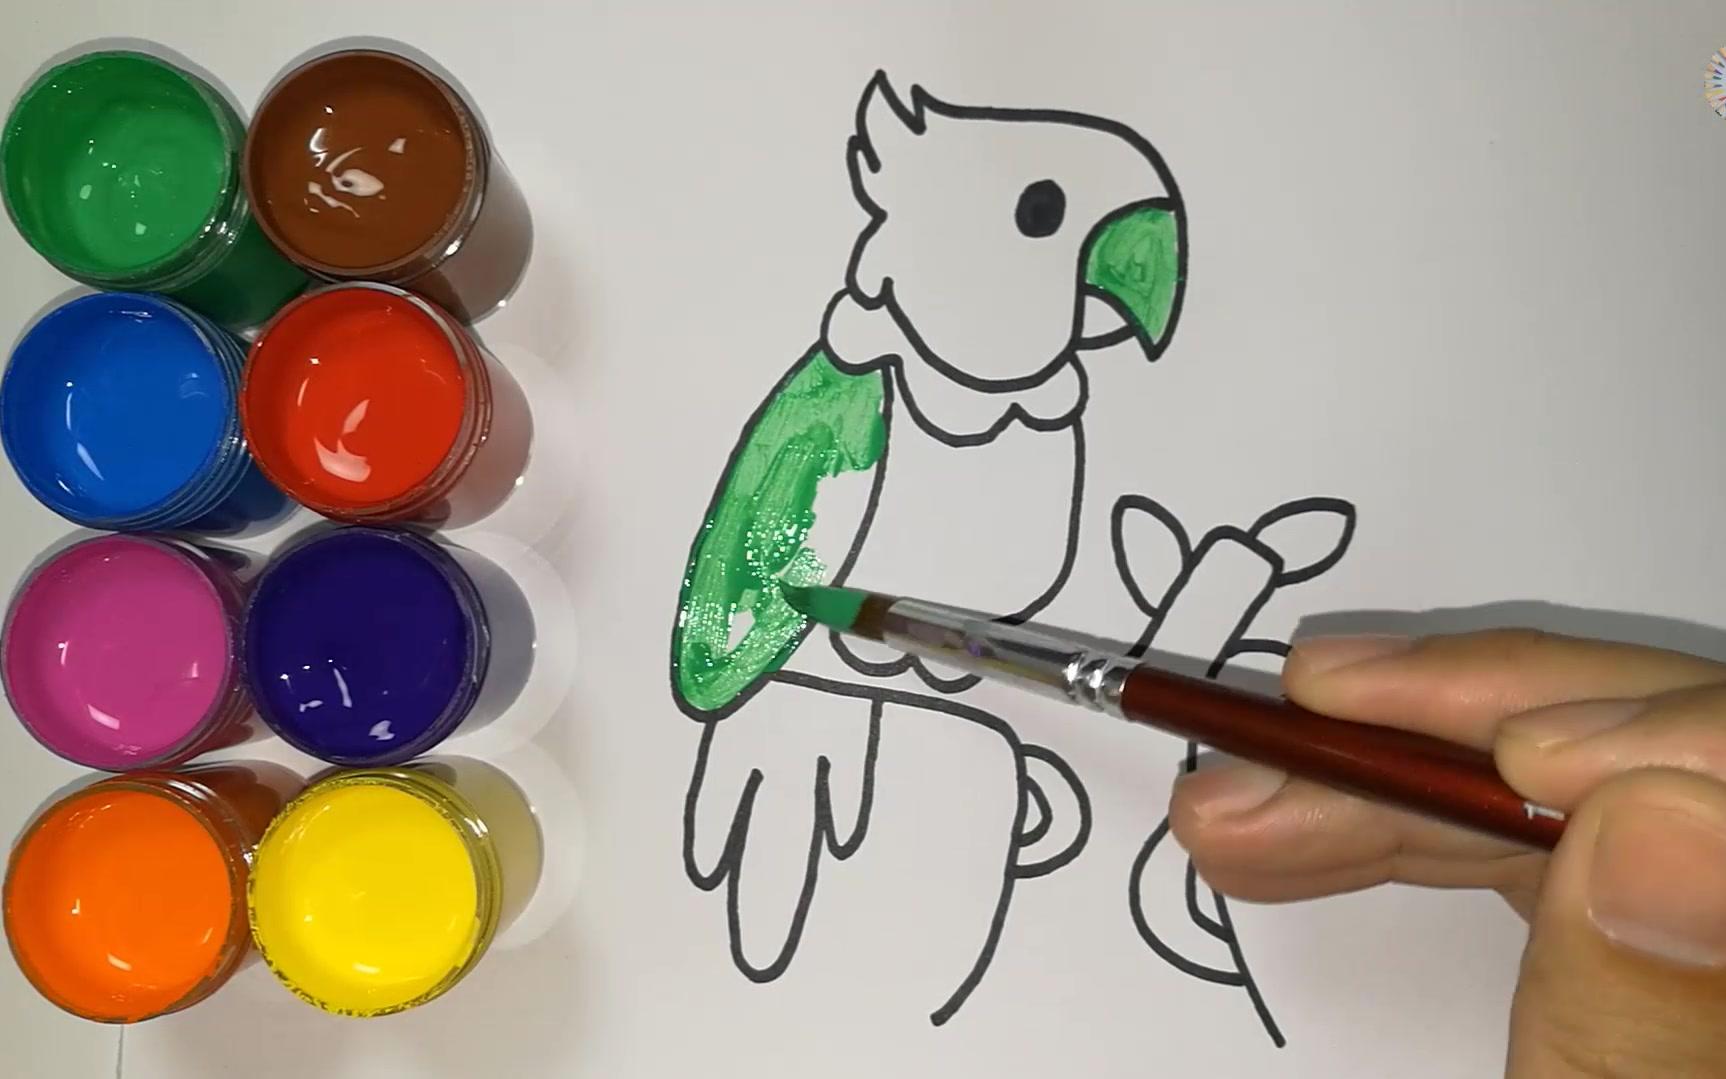 3眯眯眼的鹦鹉的画法  01:08  来源:好看视频-鹦鹉简笔画-趣味简笔画